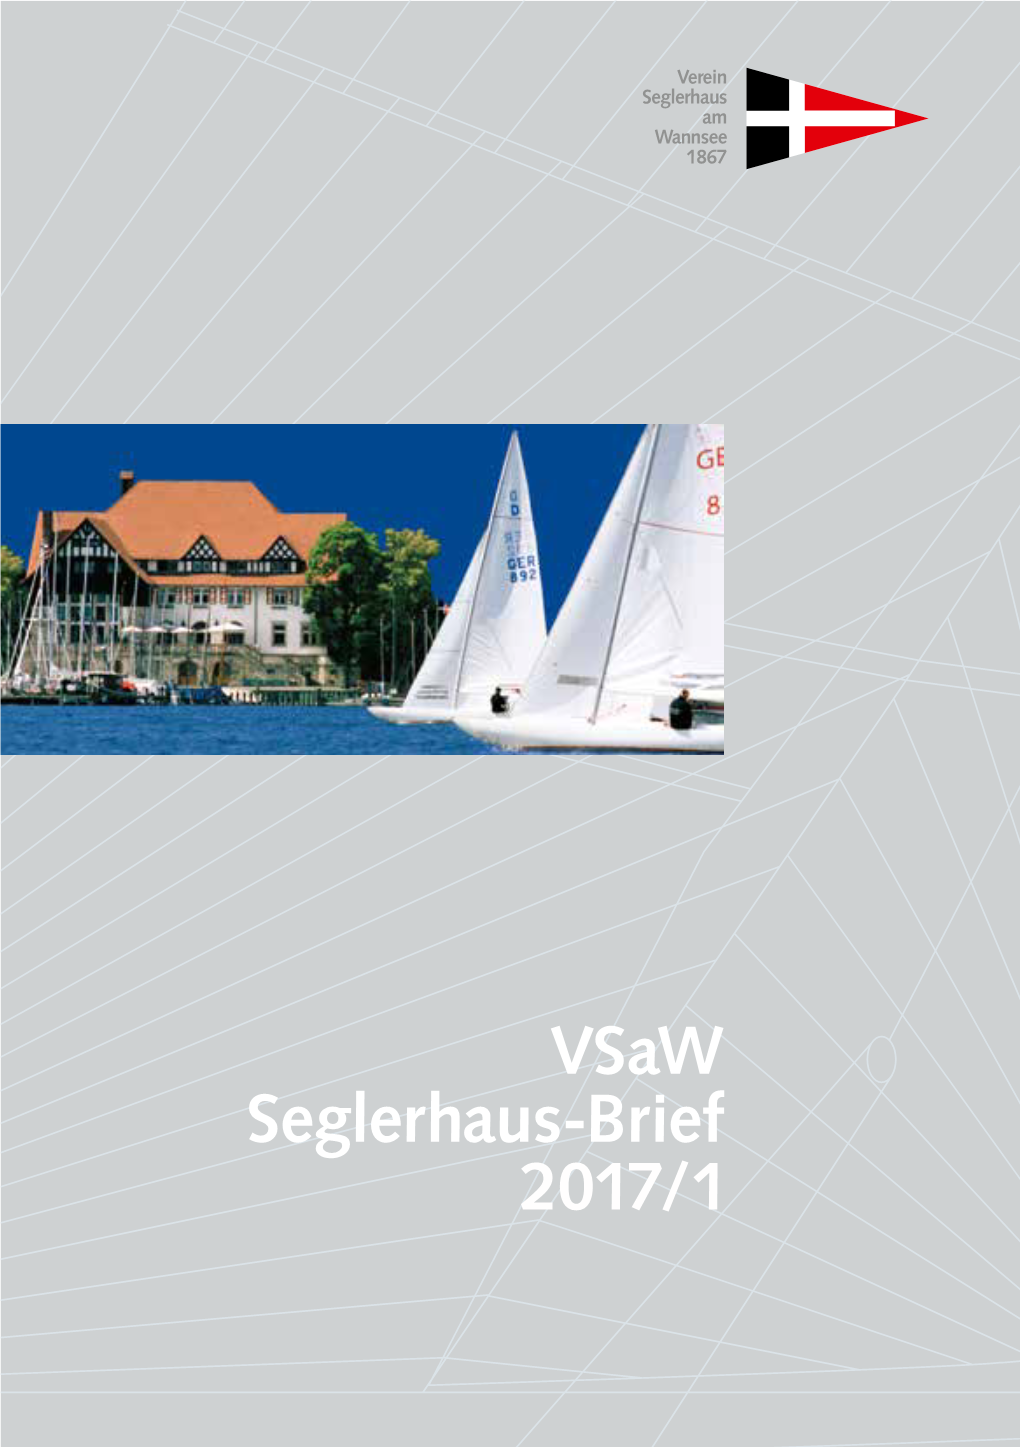 Vsaw Seglerhaus-Brief 2017/1